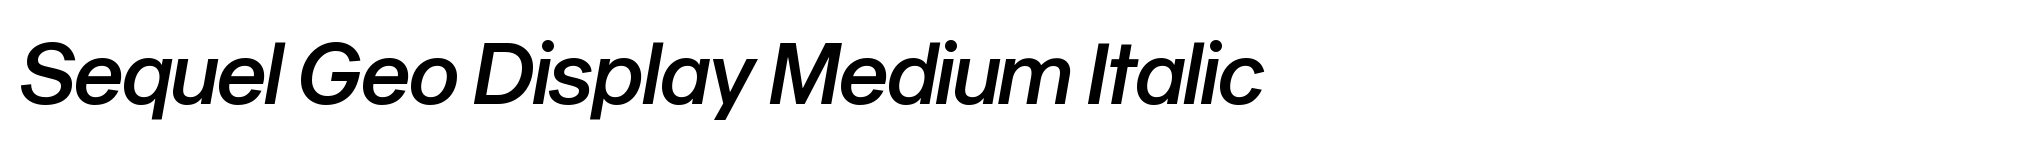 Sequel Geo Display Medium Italic image